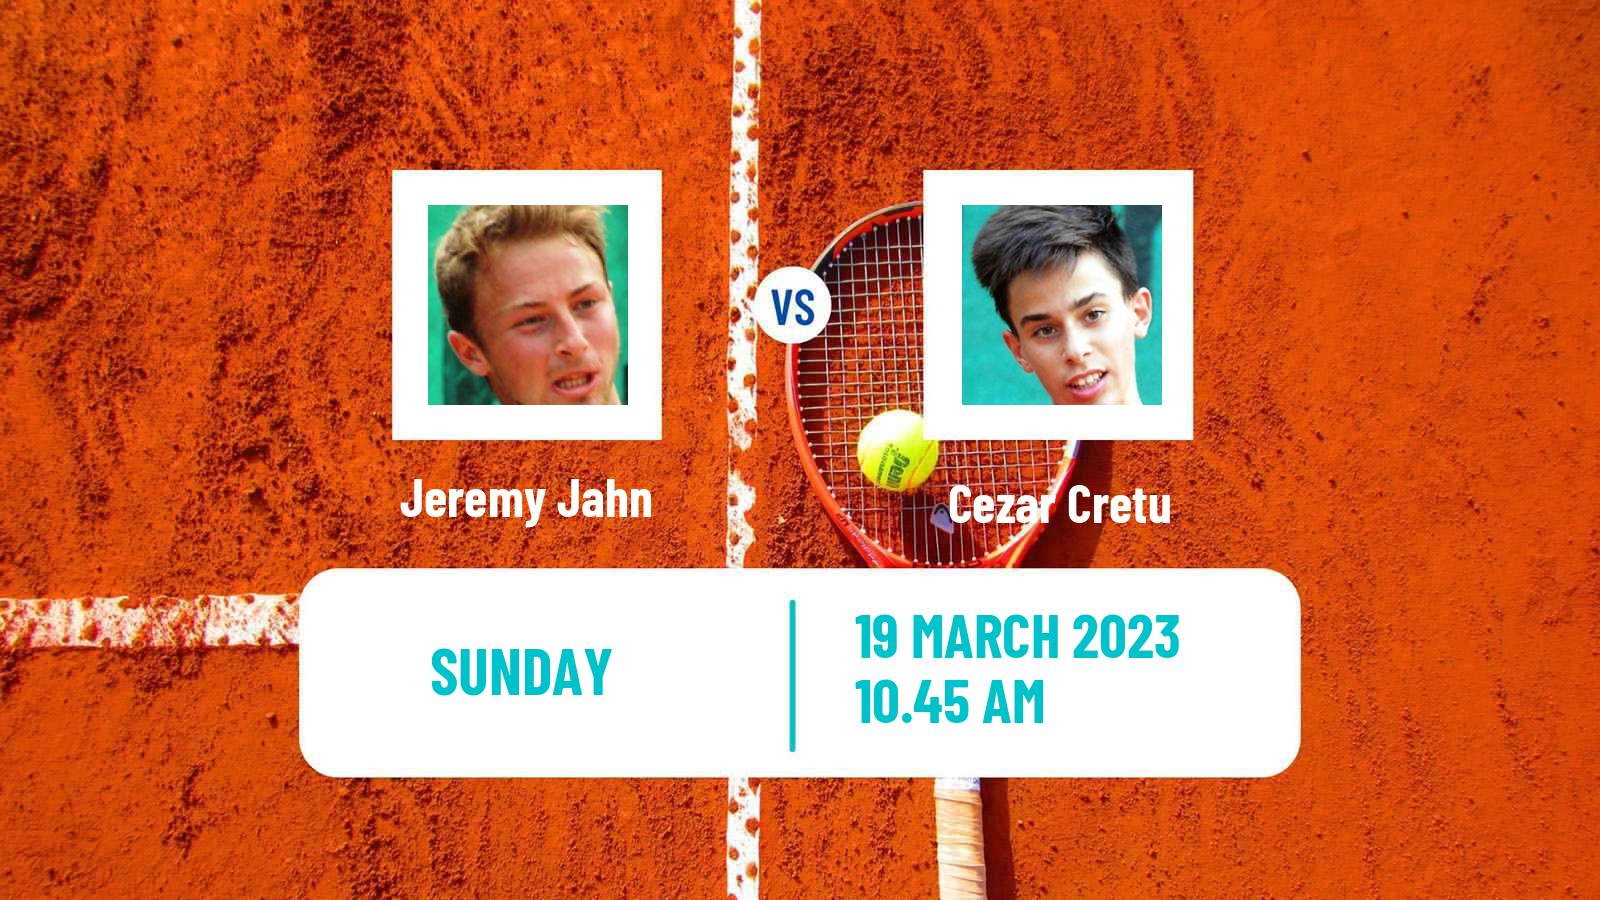 Tennis ATP Challenger Jeremy Jahn - Cezar Cretu